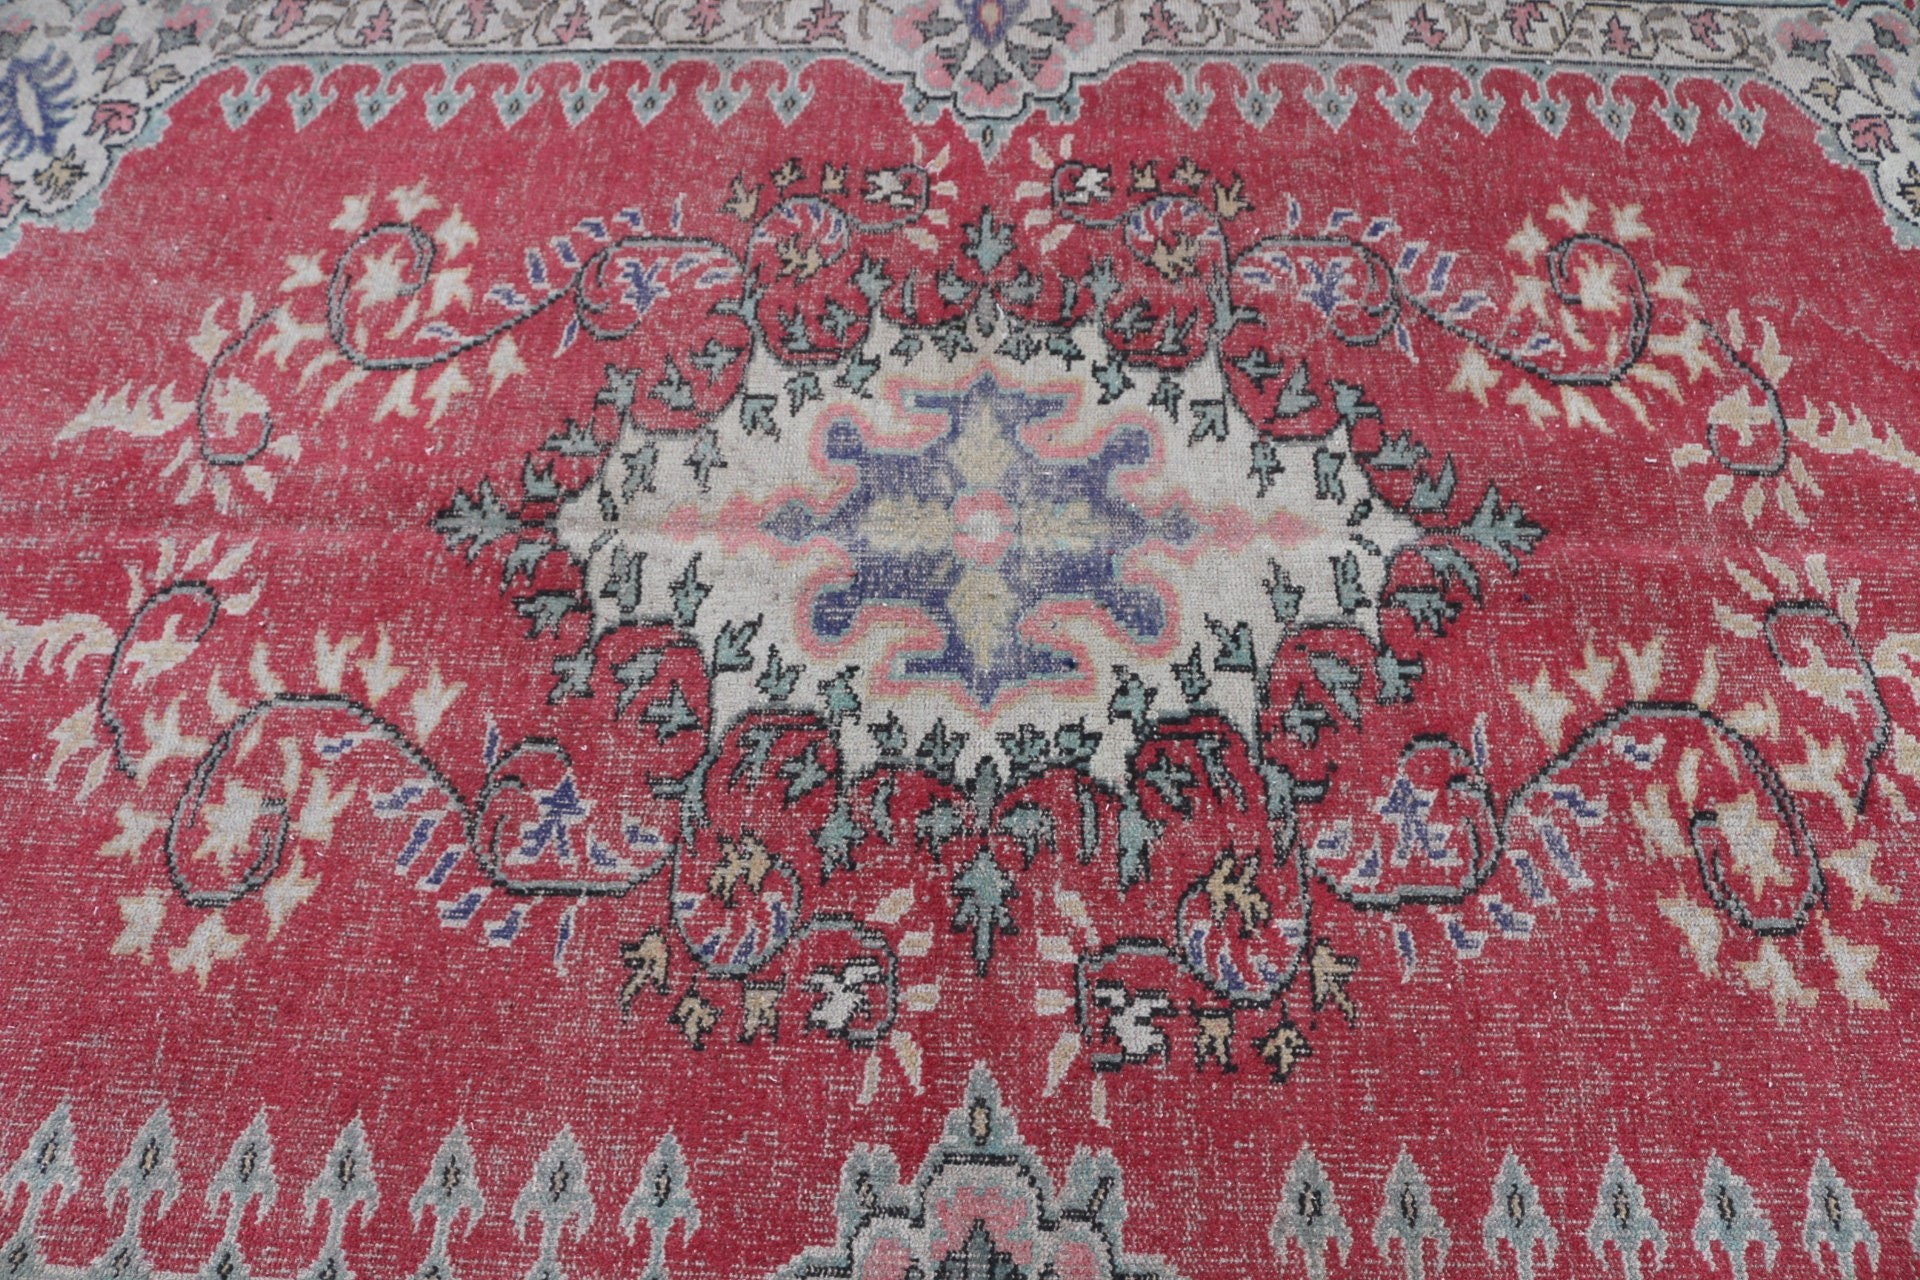 Turkish Rugs, Pastel Rug, Floor Rug, Antique Rug, Vintage Rug, 5.7x8.5 ft Large Rug, Red Home Decor Rug, Dining Room Rug, Living Room Rug